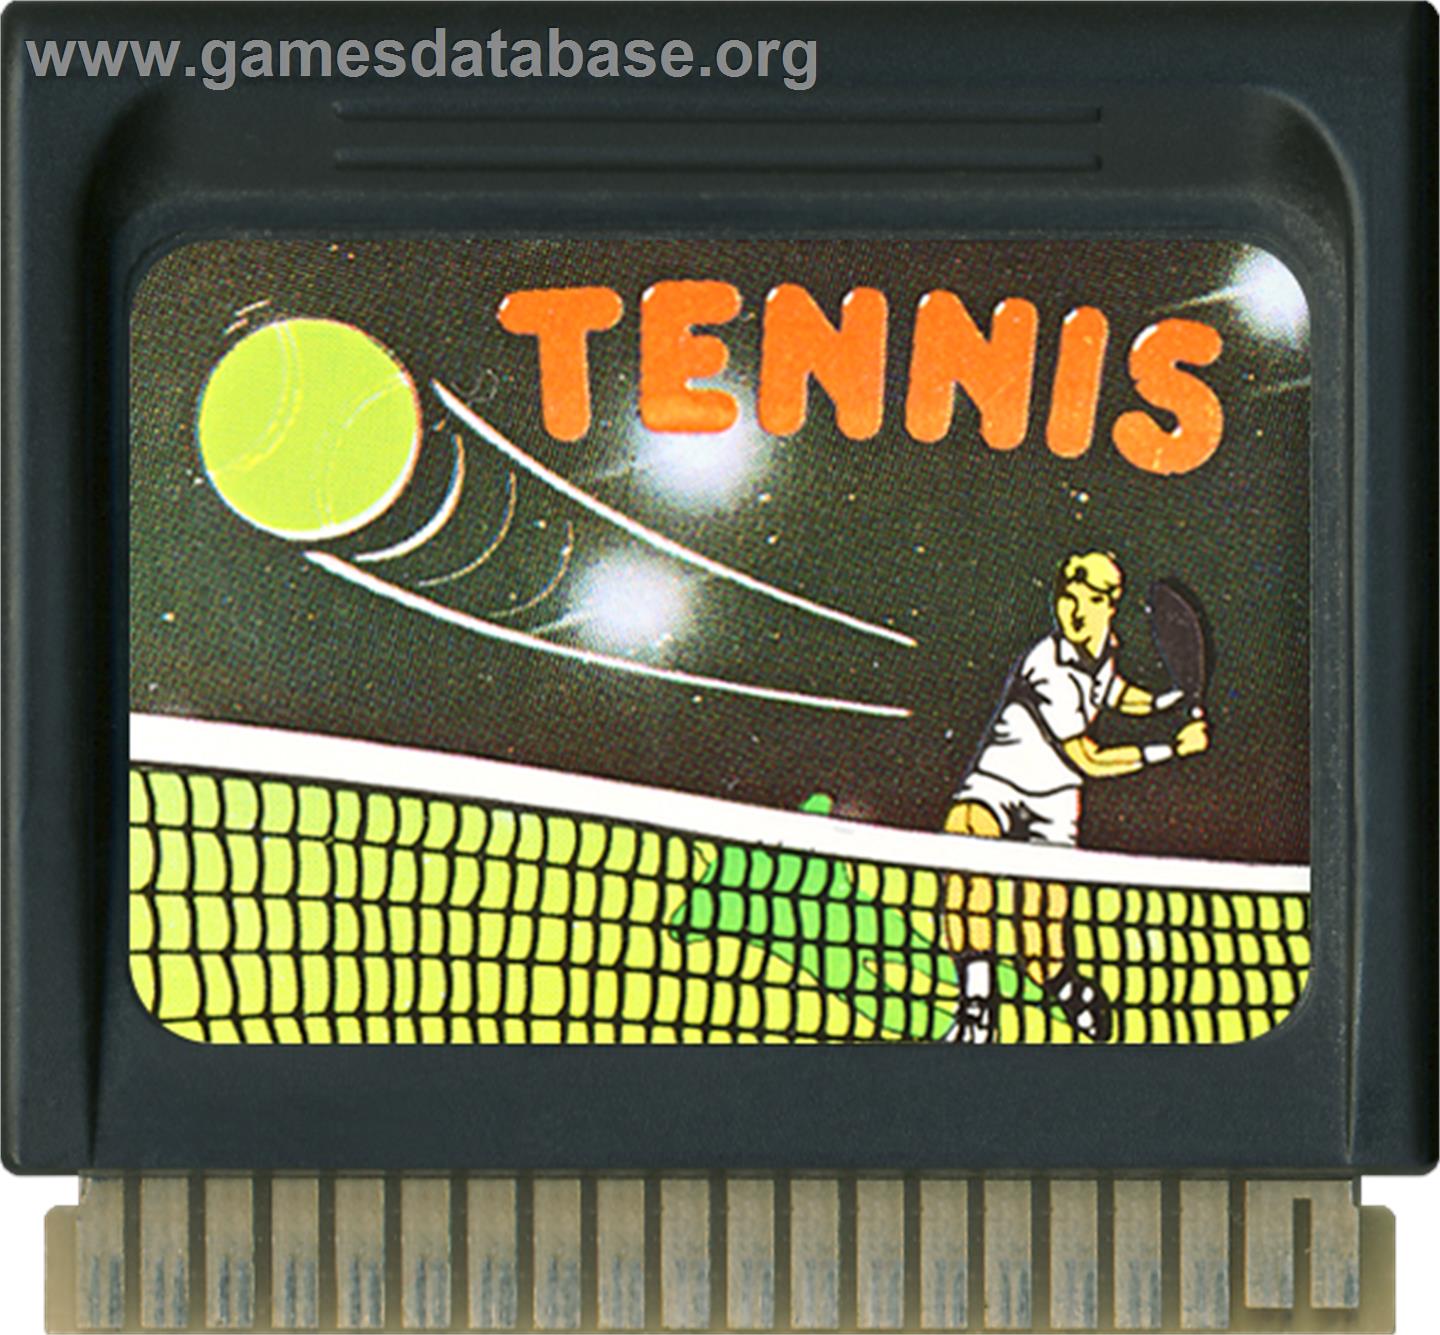 Tennis Master - Hartung Game Master - Artwork - Cartridge